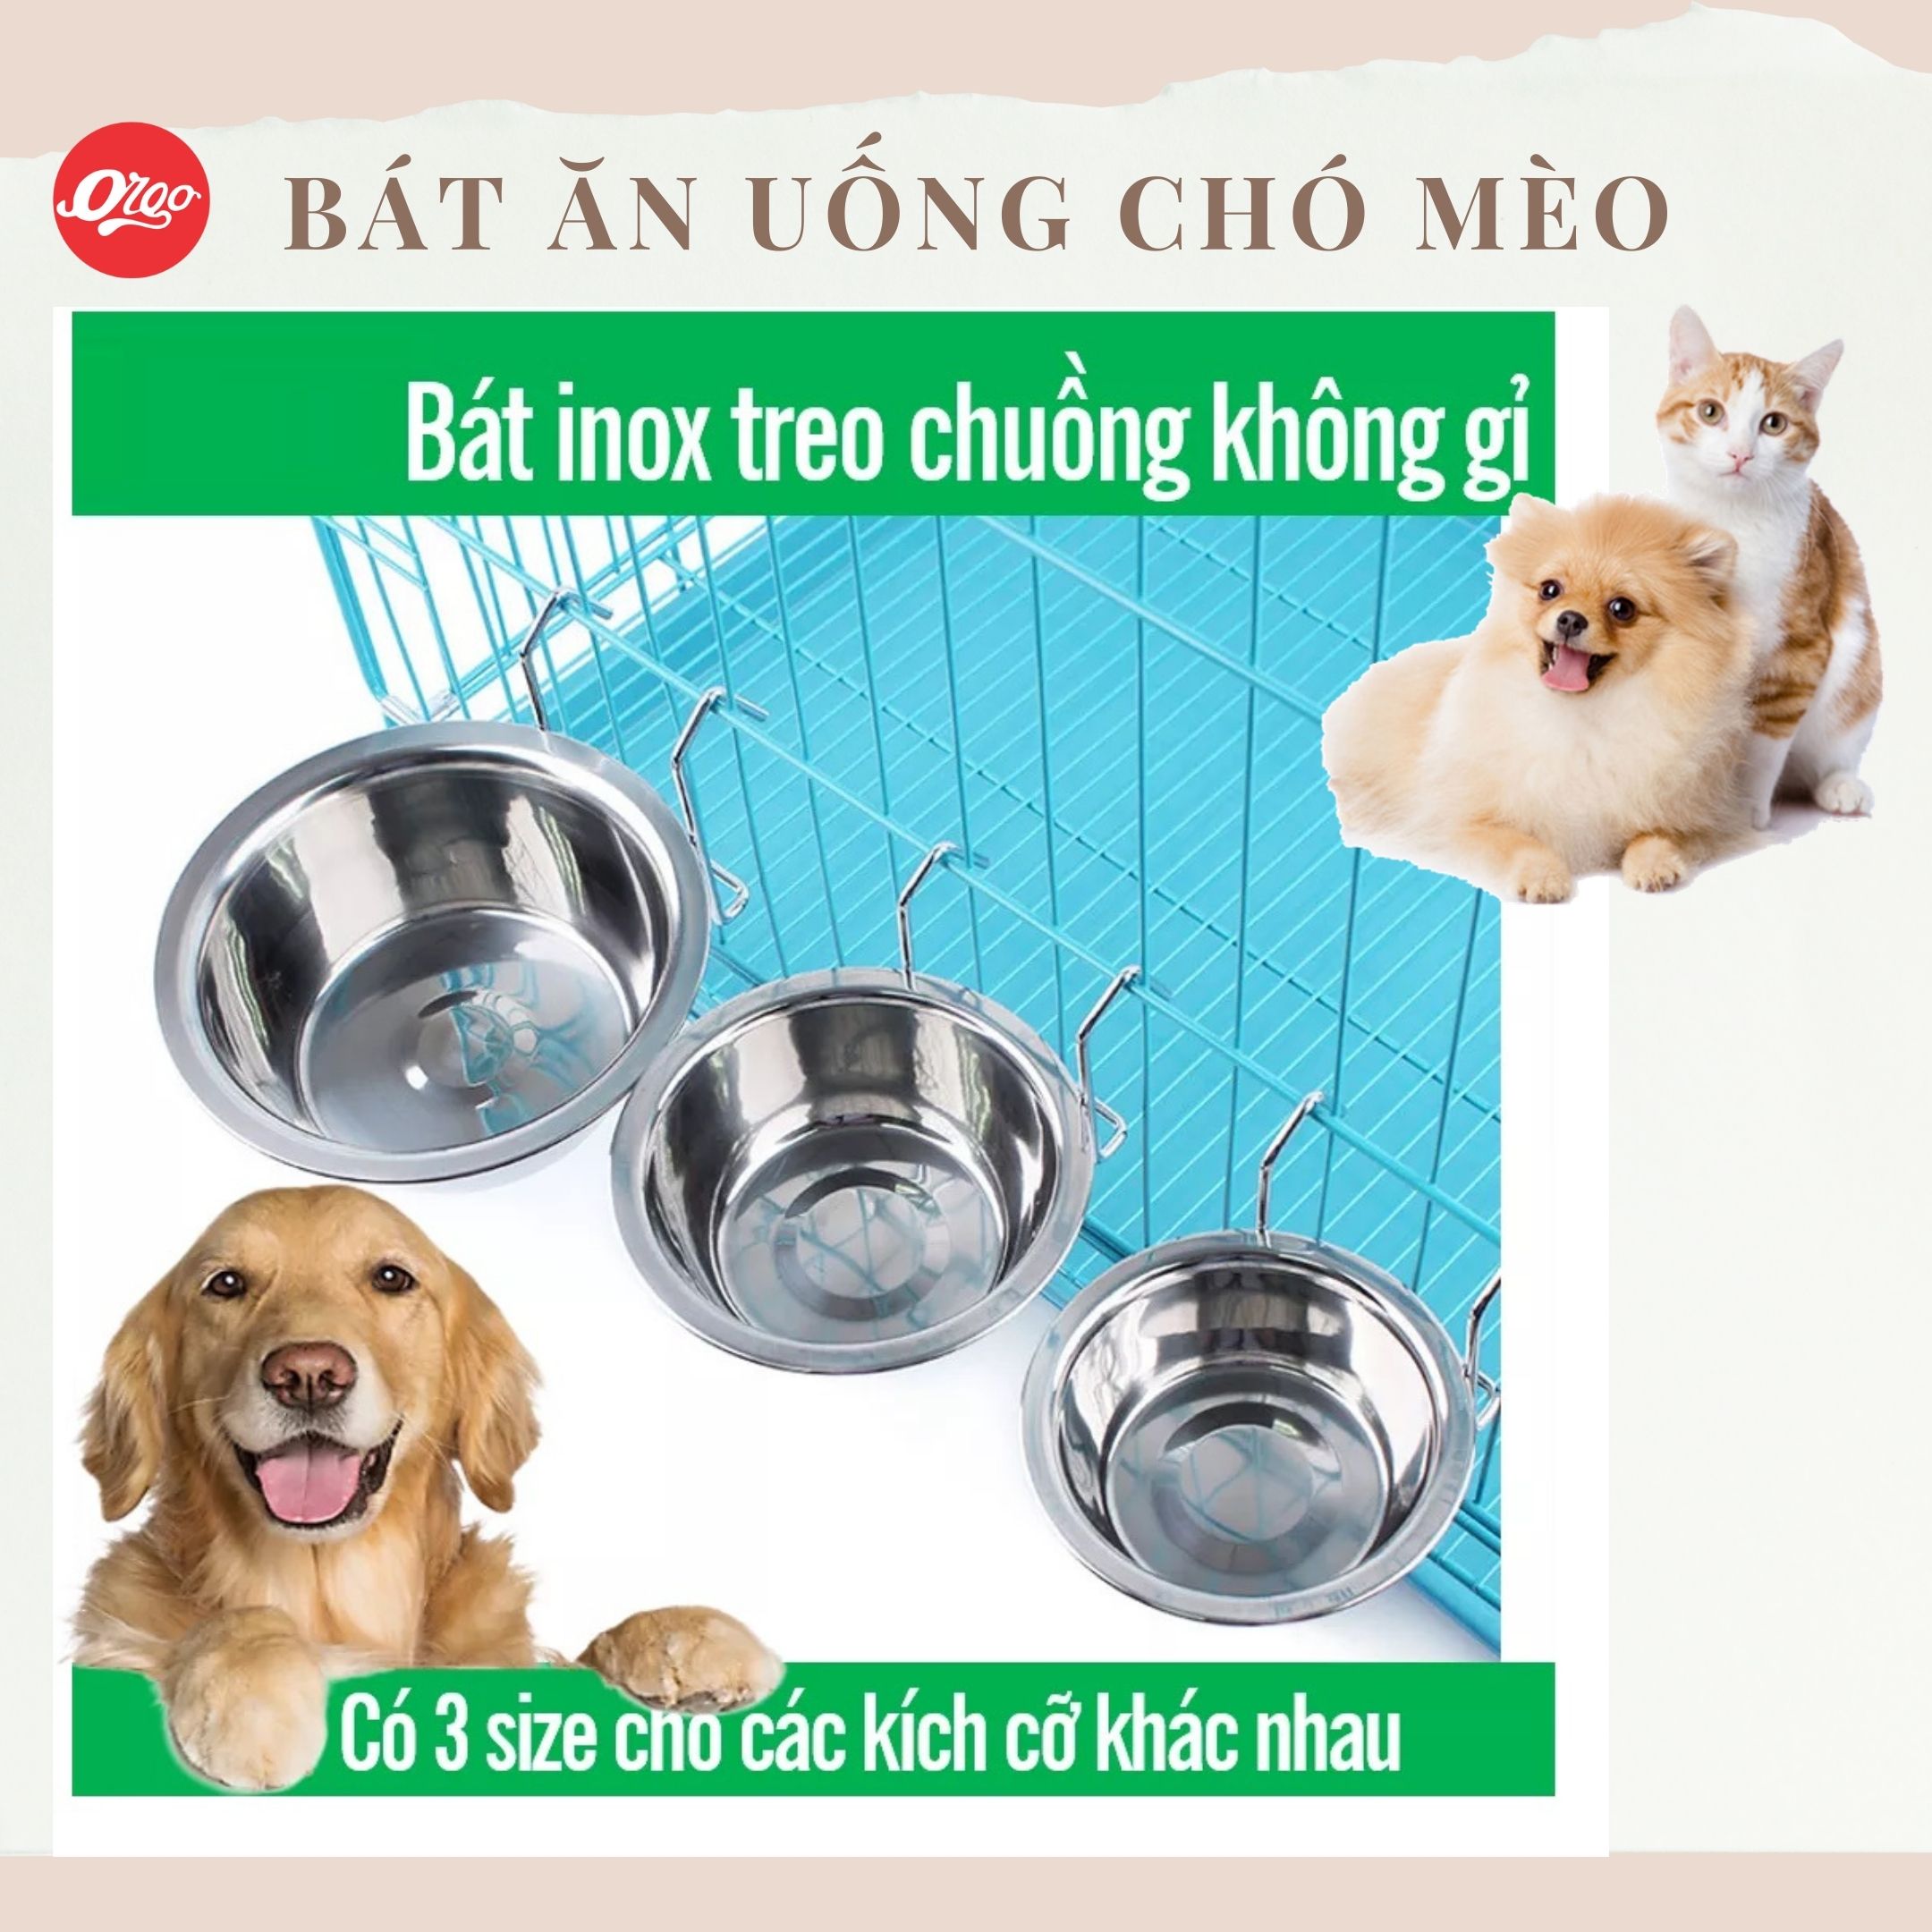 Orgo - Bát ăn cho chó mèo - Bát inox treo chuồng có giá đỡ  3 size chén